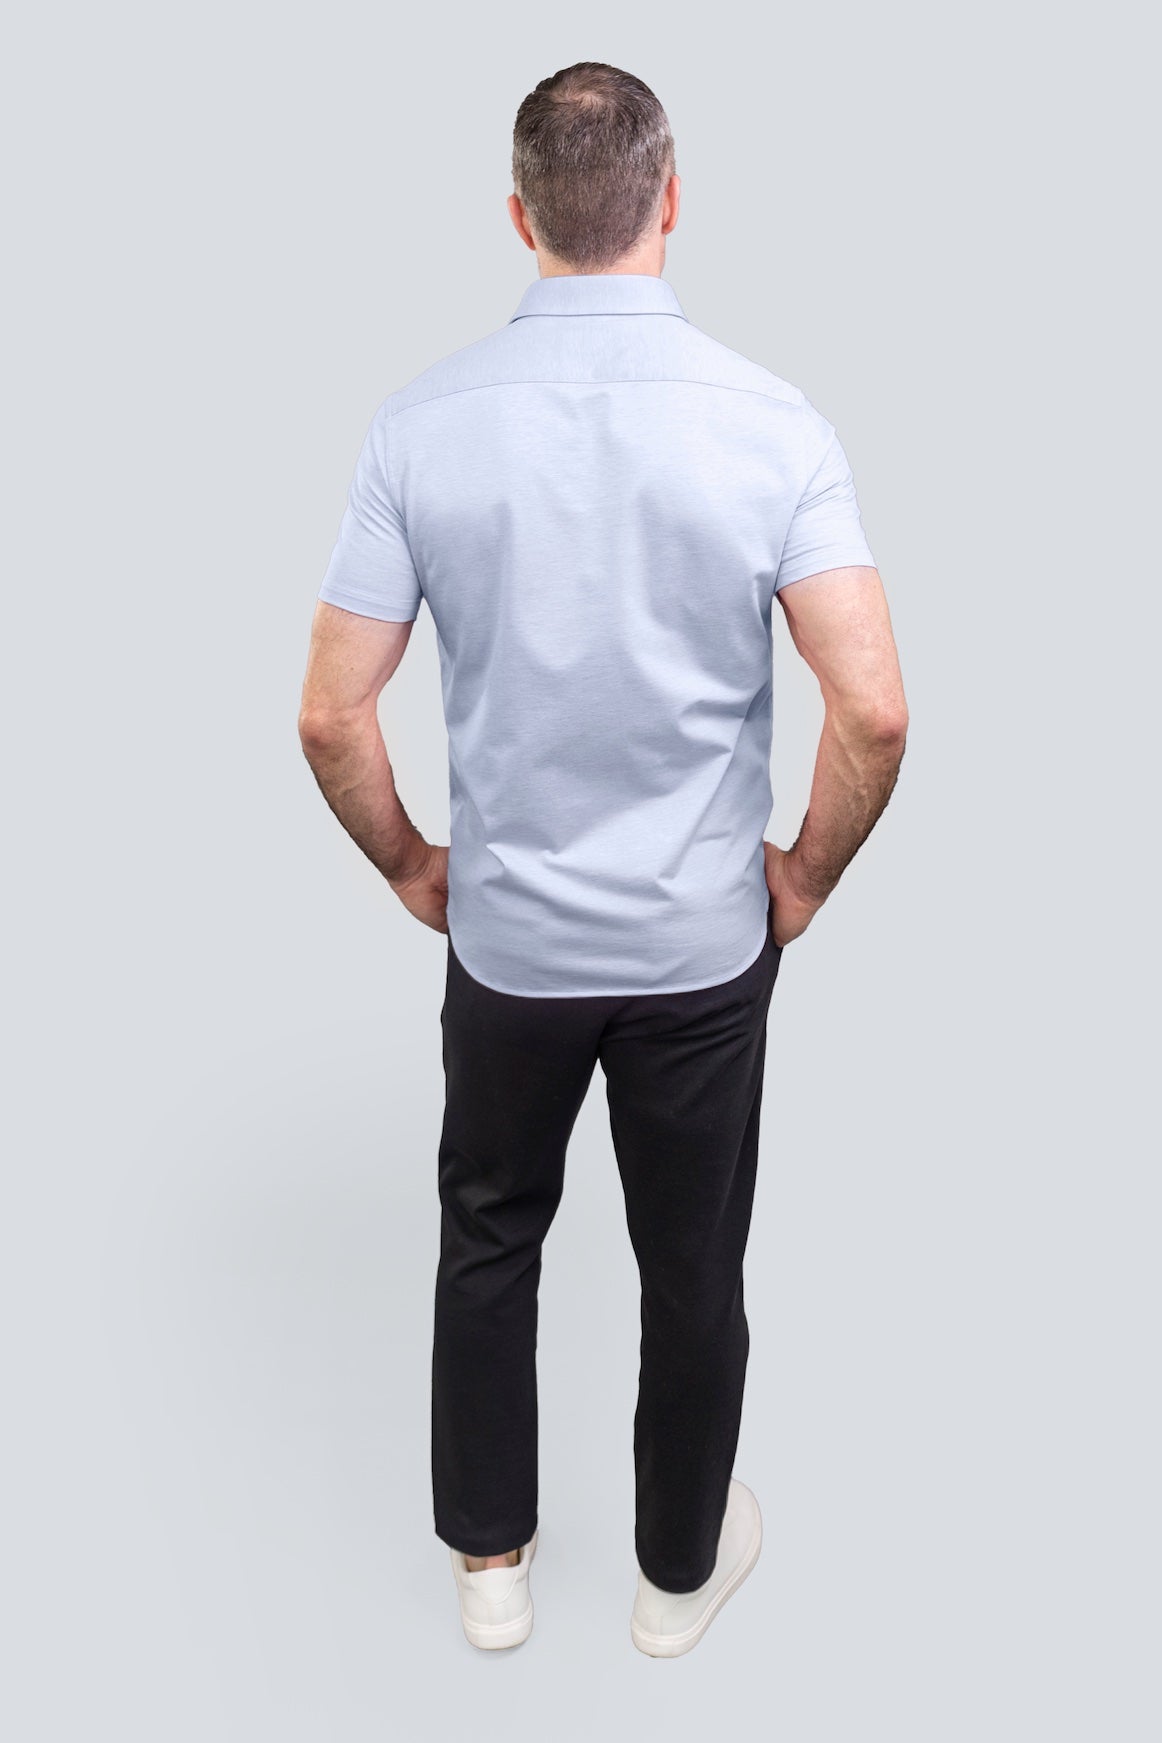 Short Sleeve Knit Shirt, Slim Fit Button Down Men's Shirt, 100% Cotton,  NiceStuff